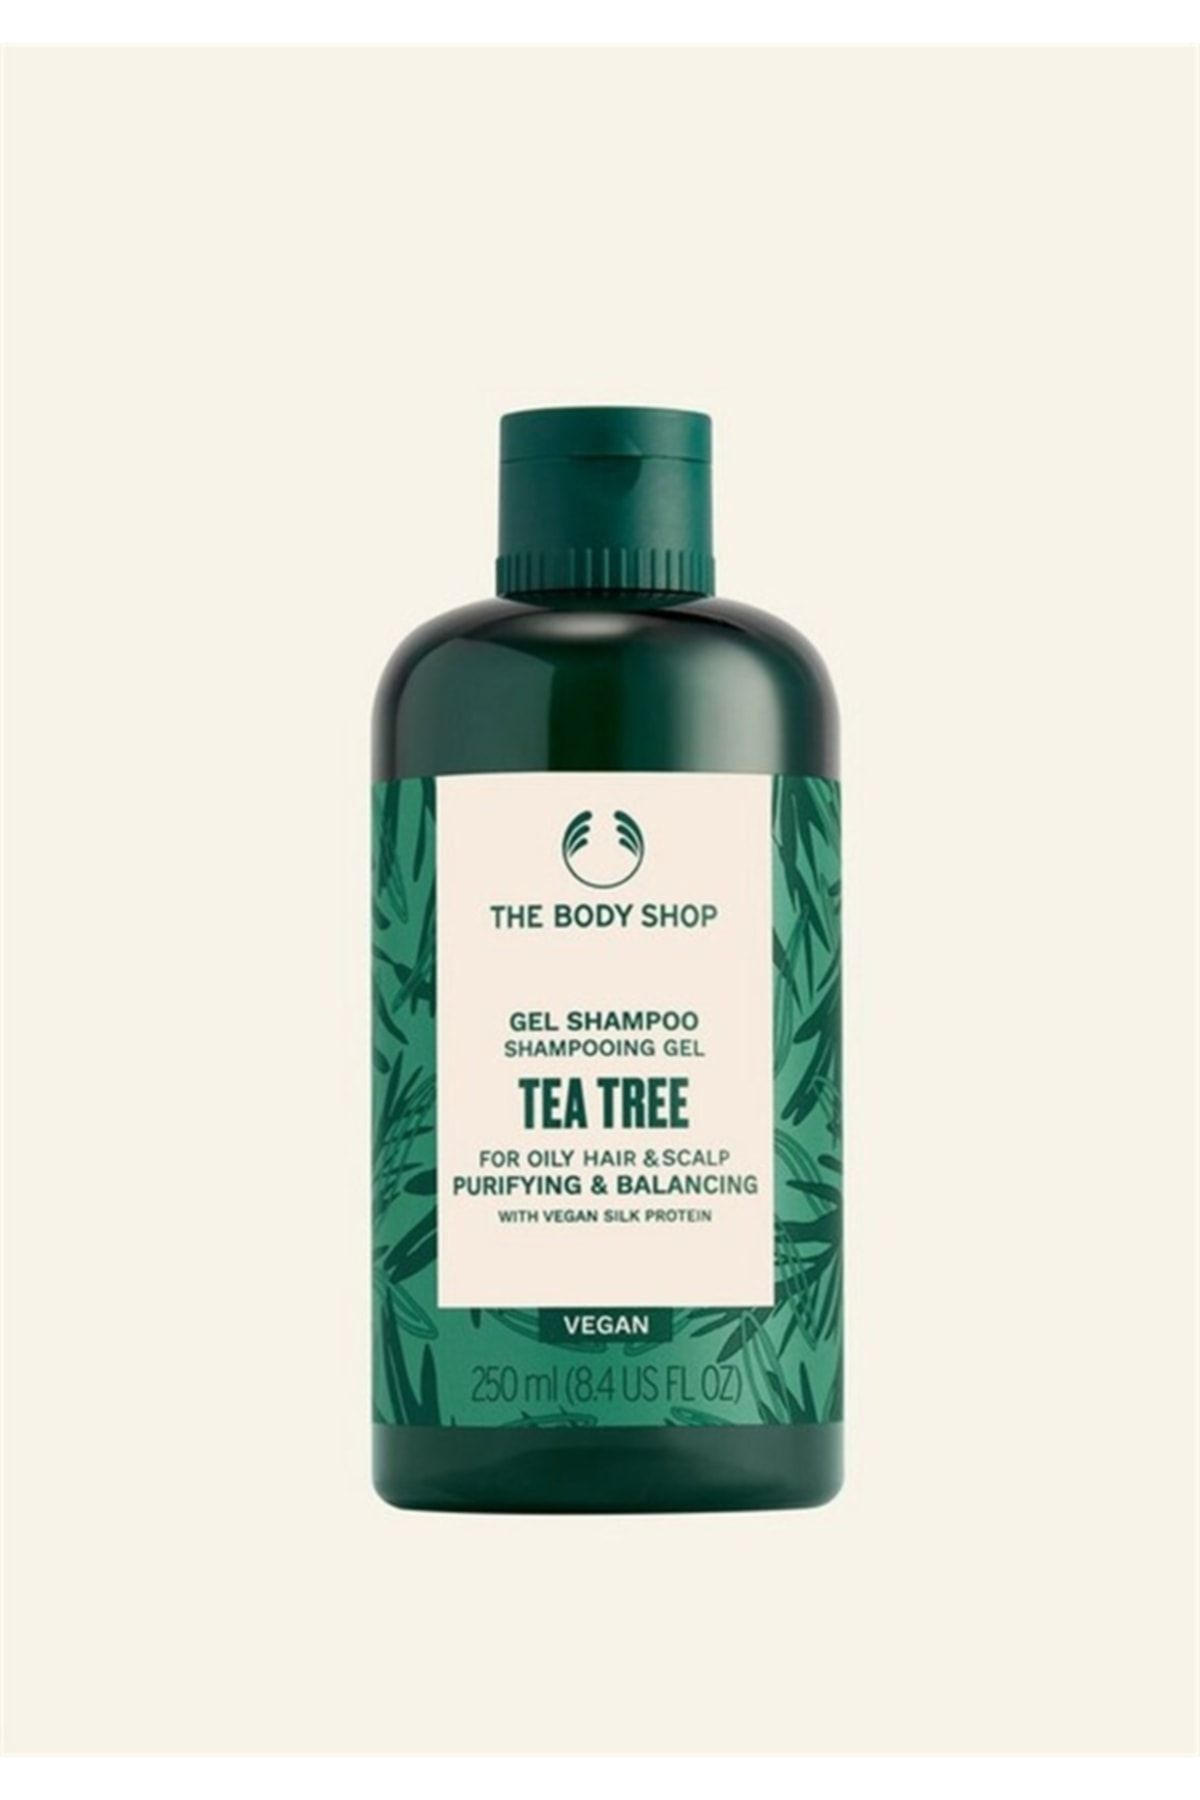 THE BODY SHOP Çay Ağacı Tea Tree Yağlı Saçlara Özel Arındırıcı Ve Dengeleyici Jel Şampuan 250 ml